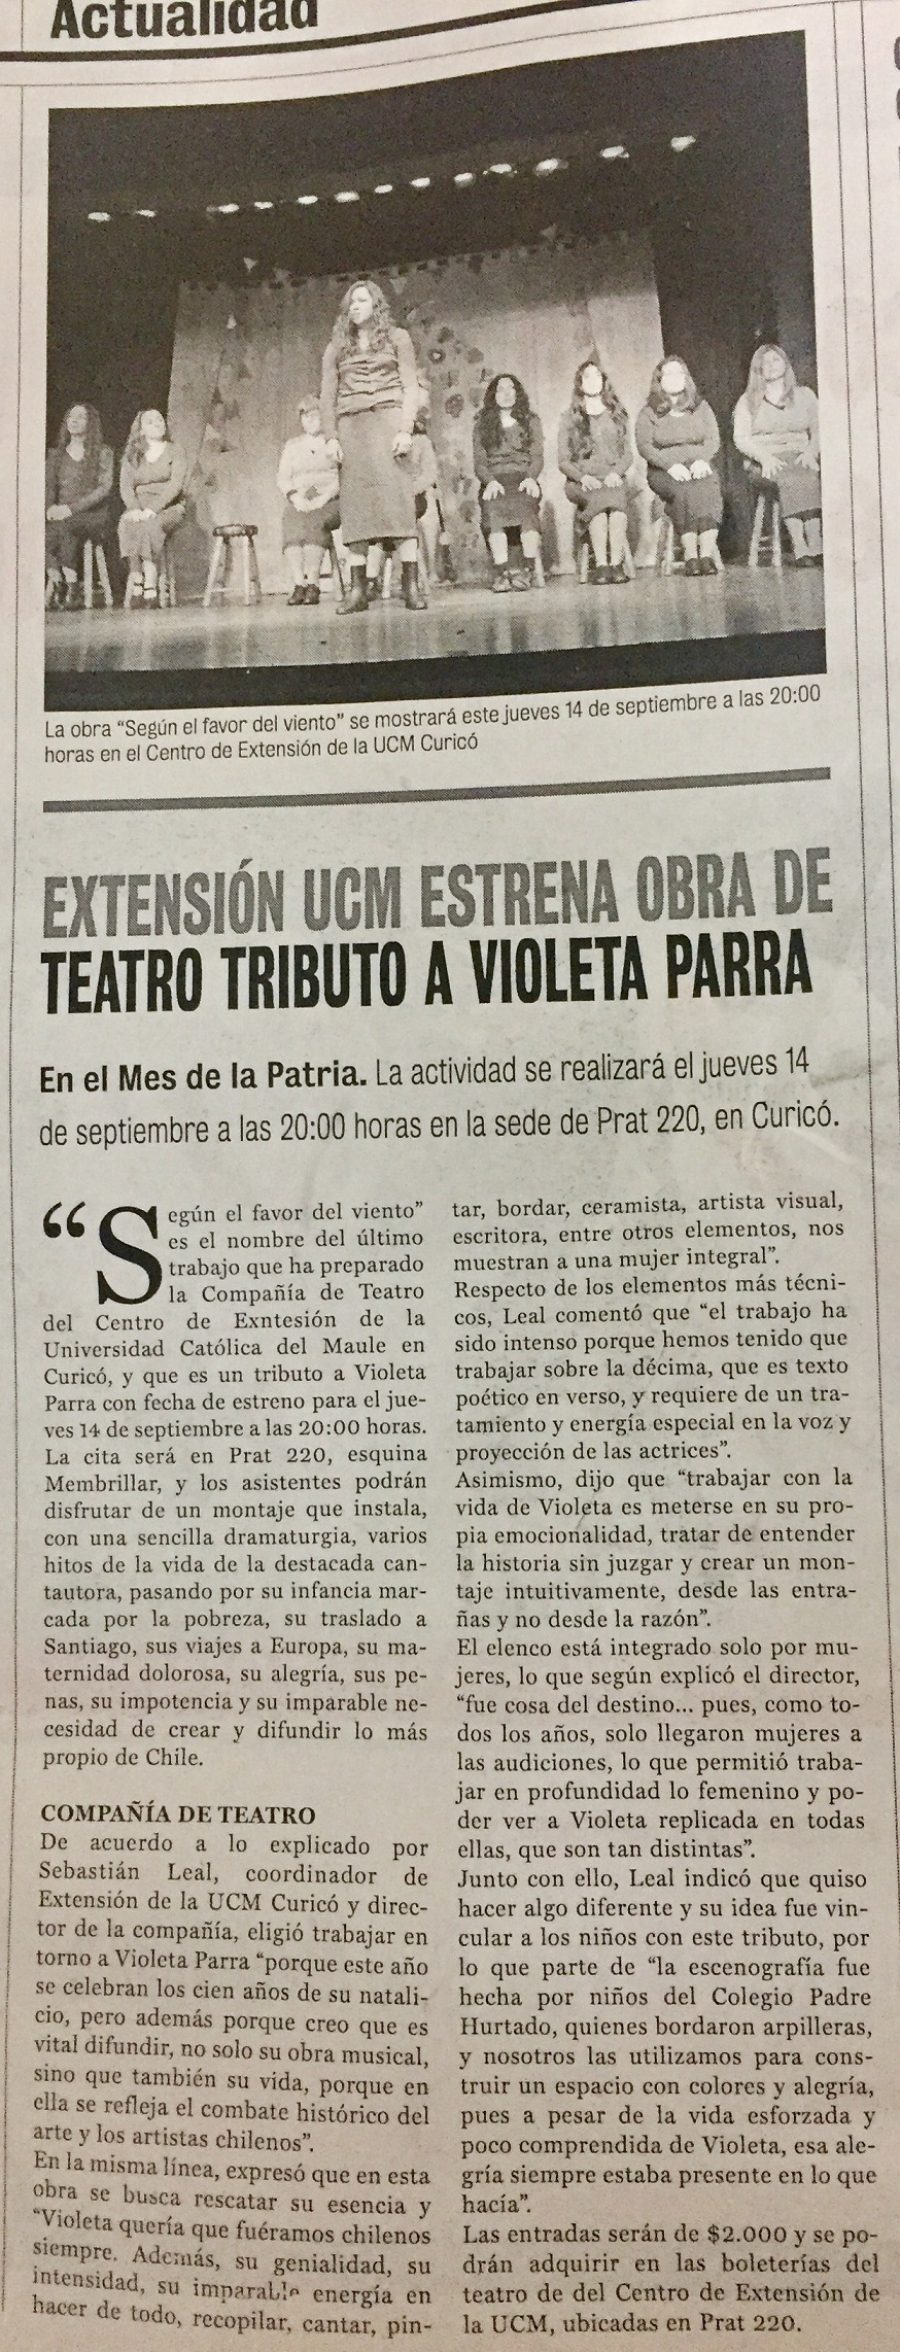 10 de septiembre en Diario La Prensa: “Extensión UCM estrena obra de teatro tributo a Violeta Parra”